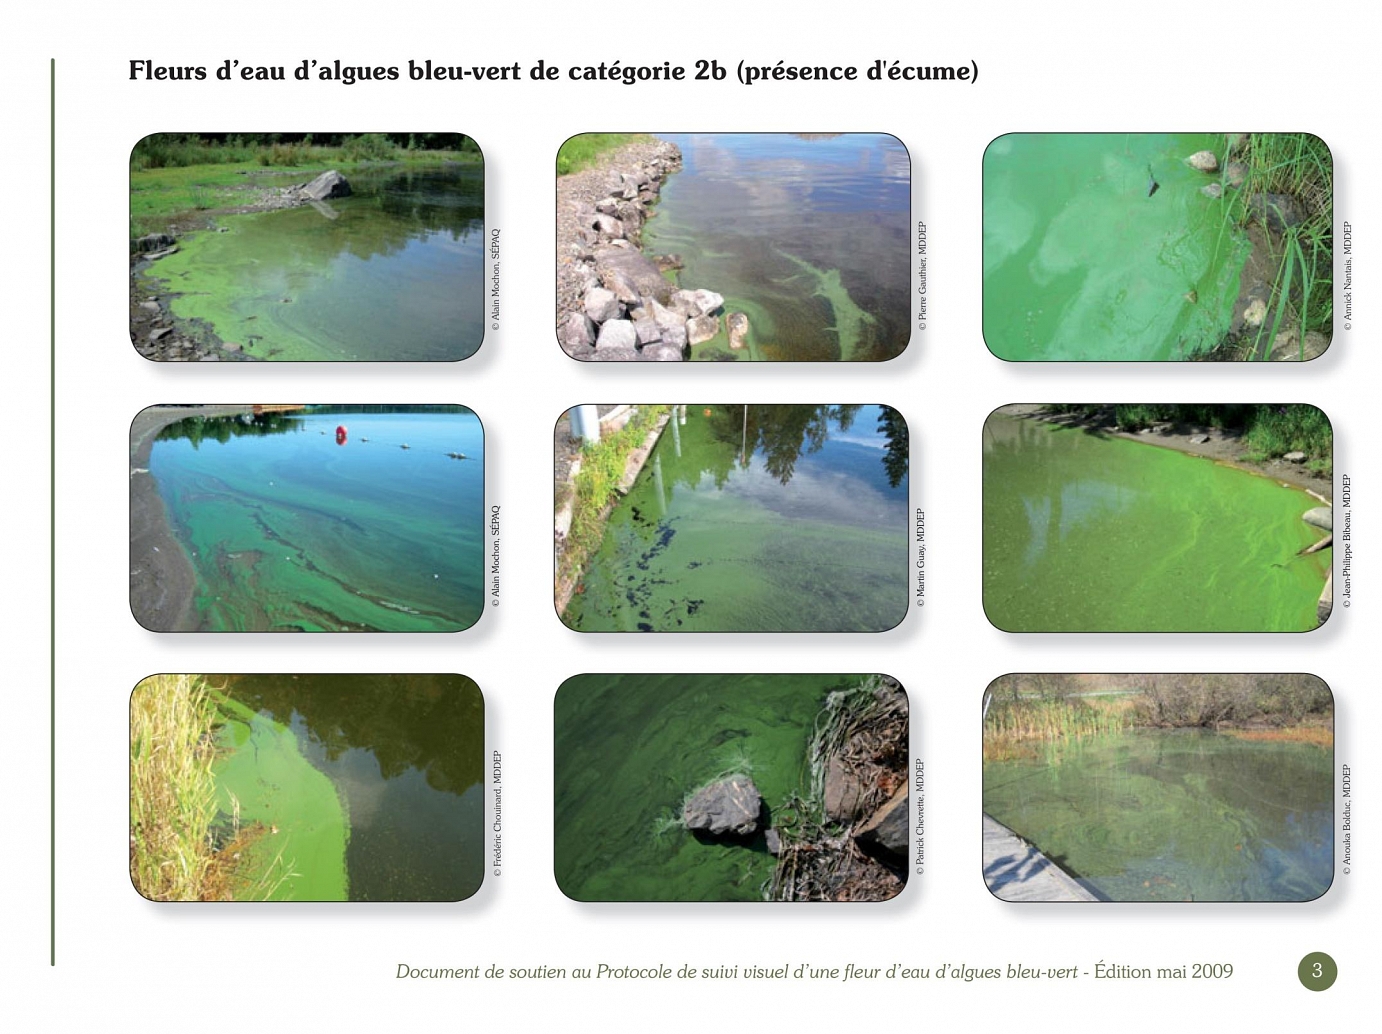 Ministère du Développement durable, de l’Environnement et des Parcs, Conseil régional de l’environnement des Laurentides, Document de soutien au Protocole de suivi visuel d’une fleur d’eau d’algues bleu-vert, Juillet 2008 (2e édition – mai 2009).